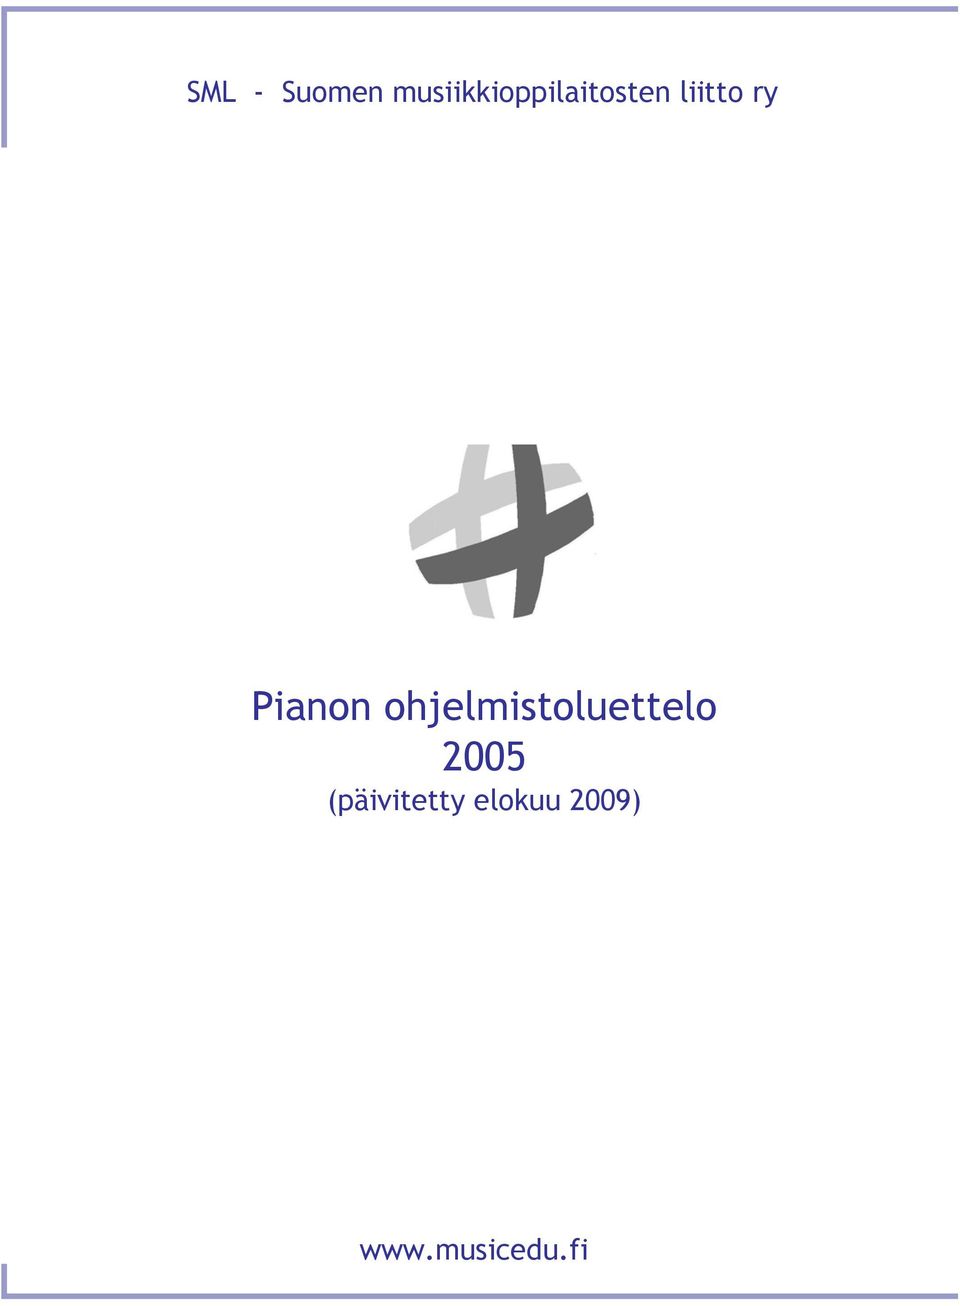 SML - Suomen musiikkioppilaitosten liitto ry. Pianon ohjelmistoluettelo  2005 (päivitetty elokuu 2009) - PDF Ilmainen lataus